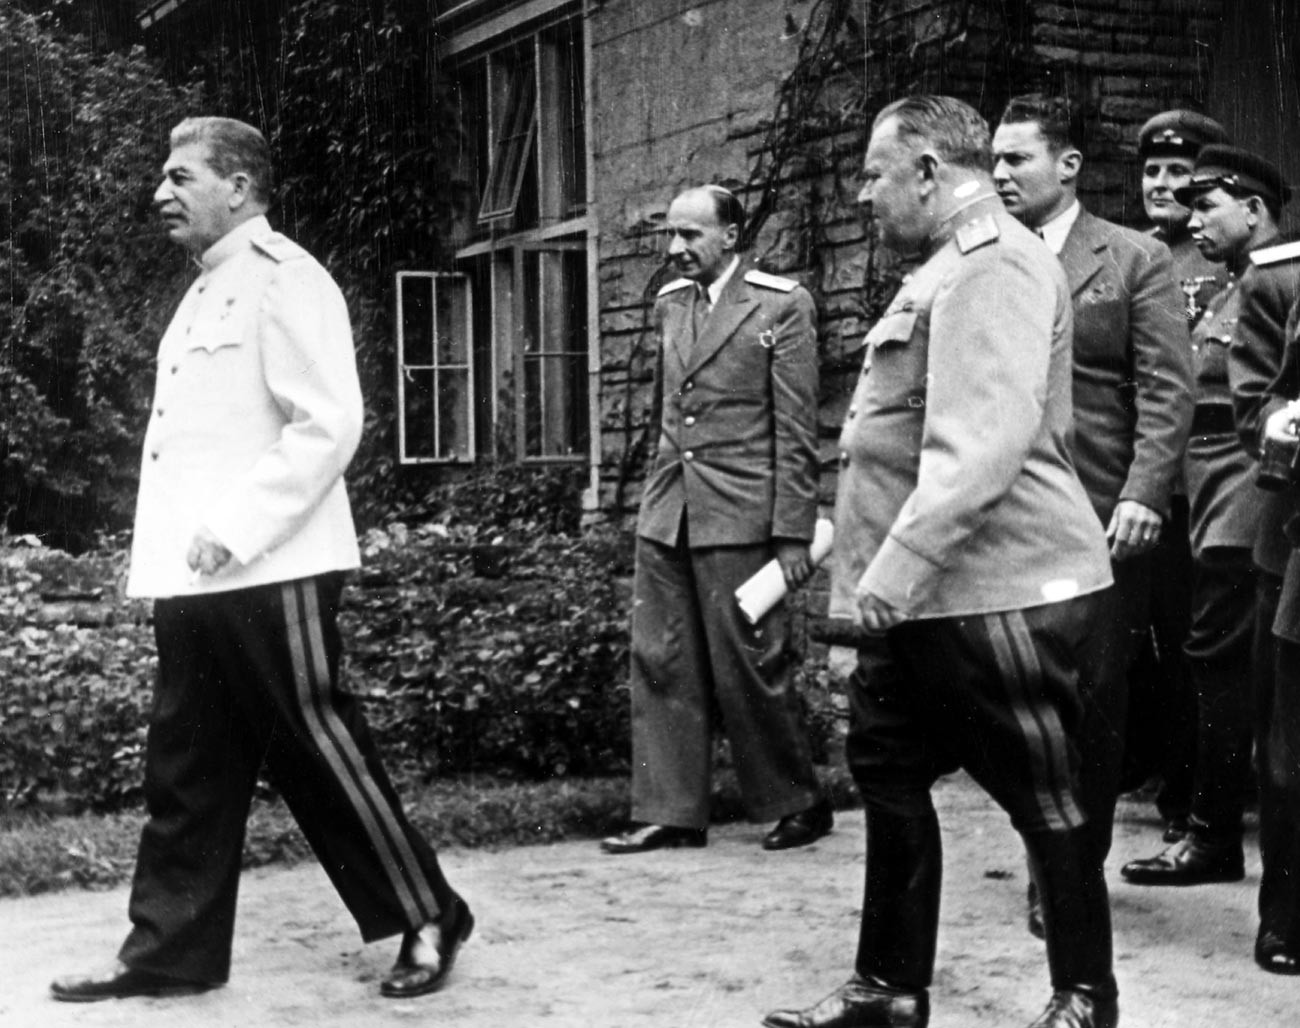 Sovjetski voditelj Josif Stalin v beli vojaški bluzi z ostalimi vojaškimi častniki na potsdamski konferenci julija 1945